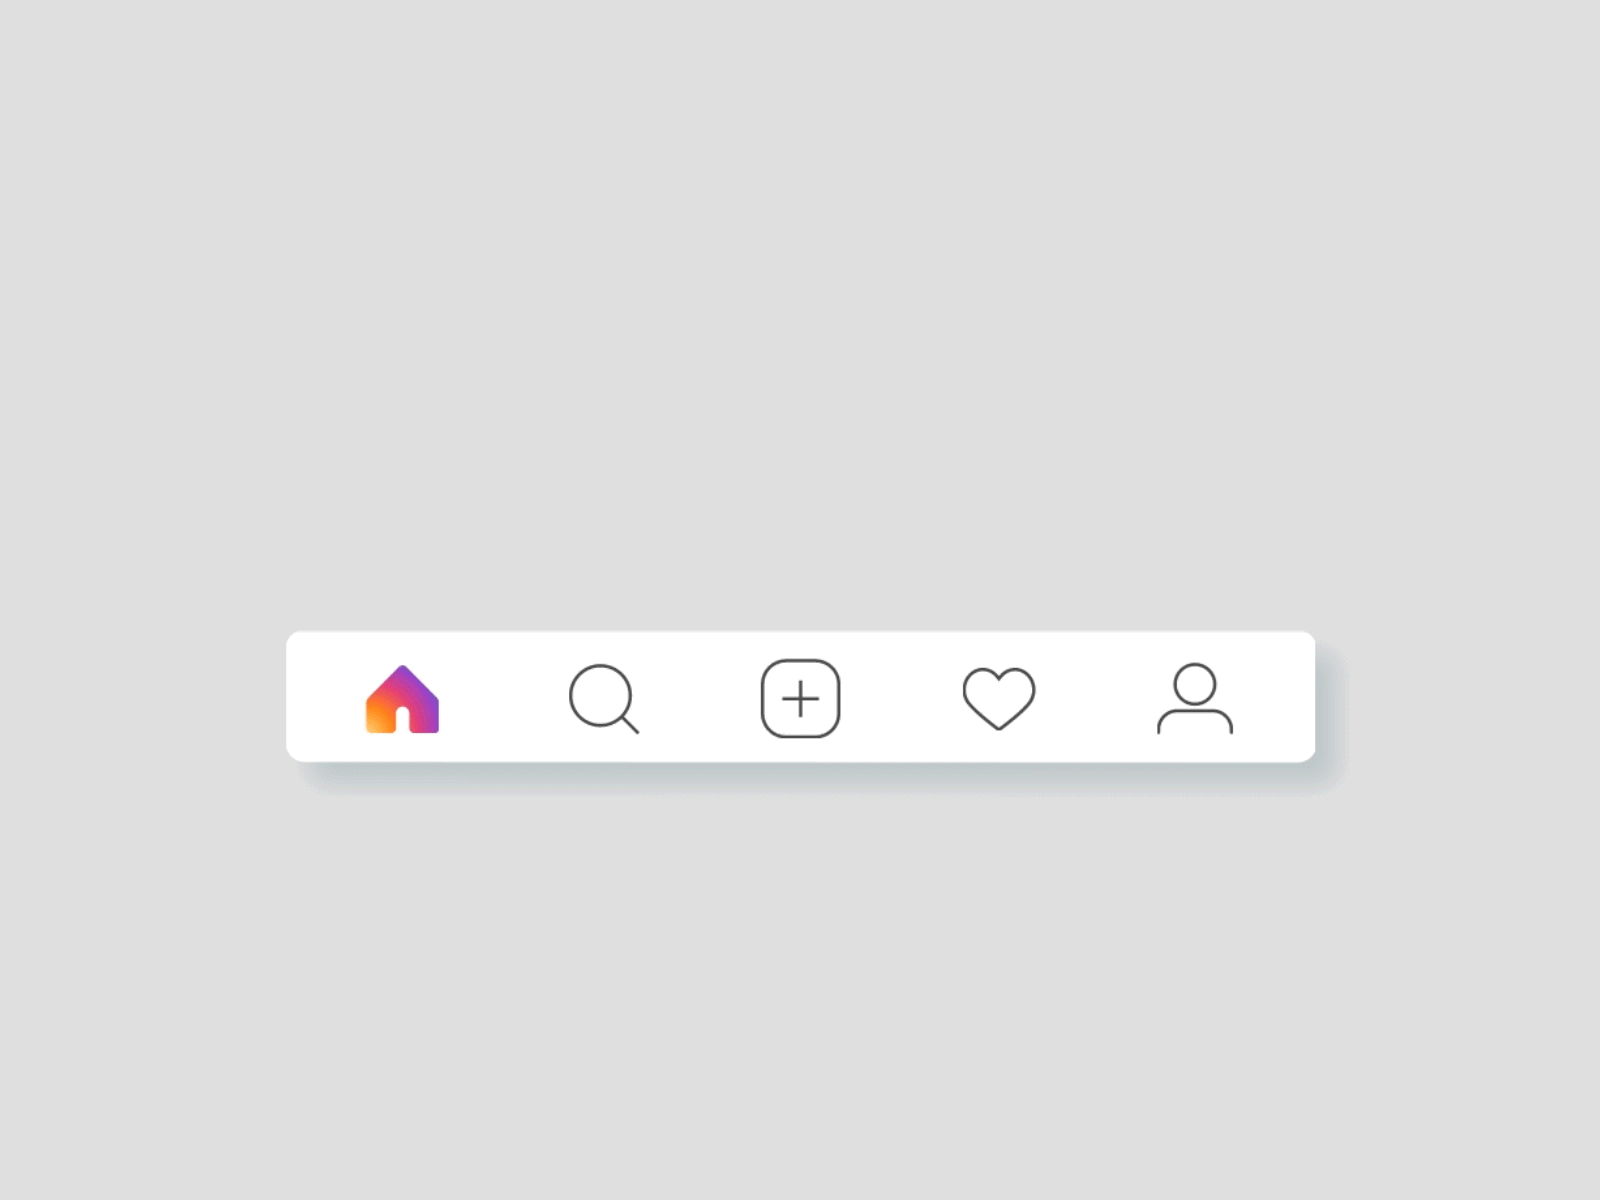 Instagram Navigation Bar Concept